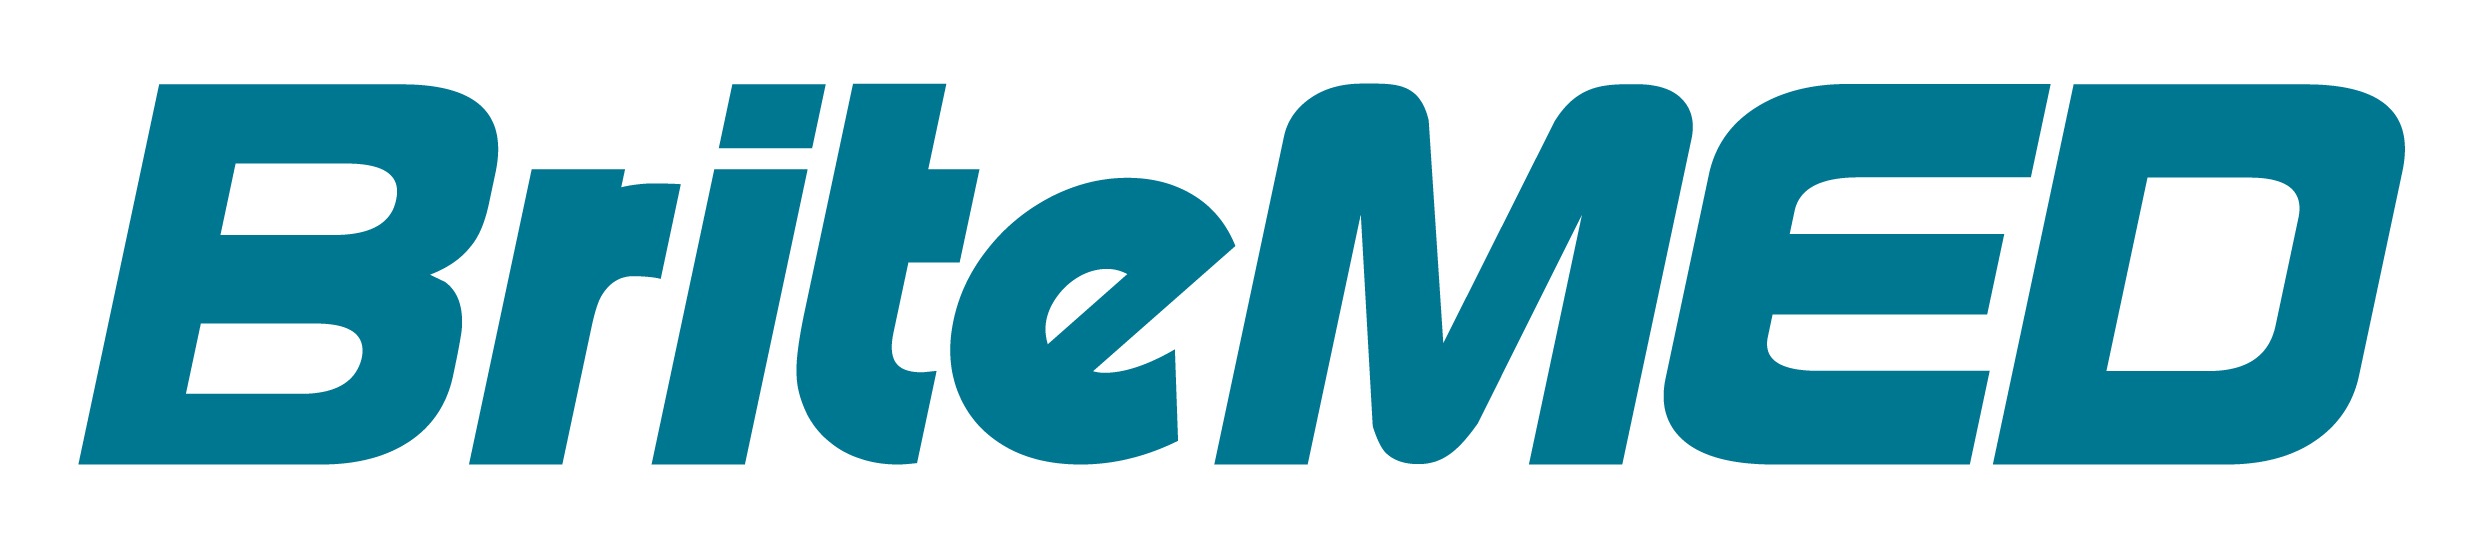 BriteMED logo.jpg